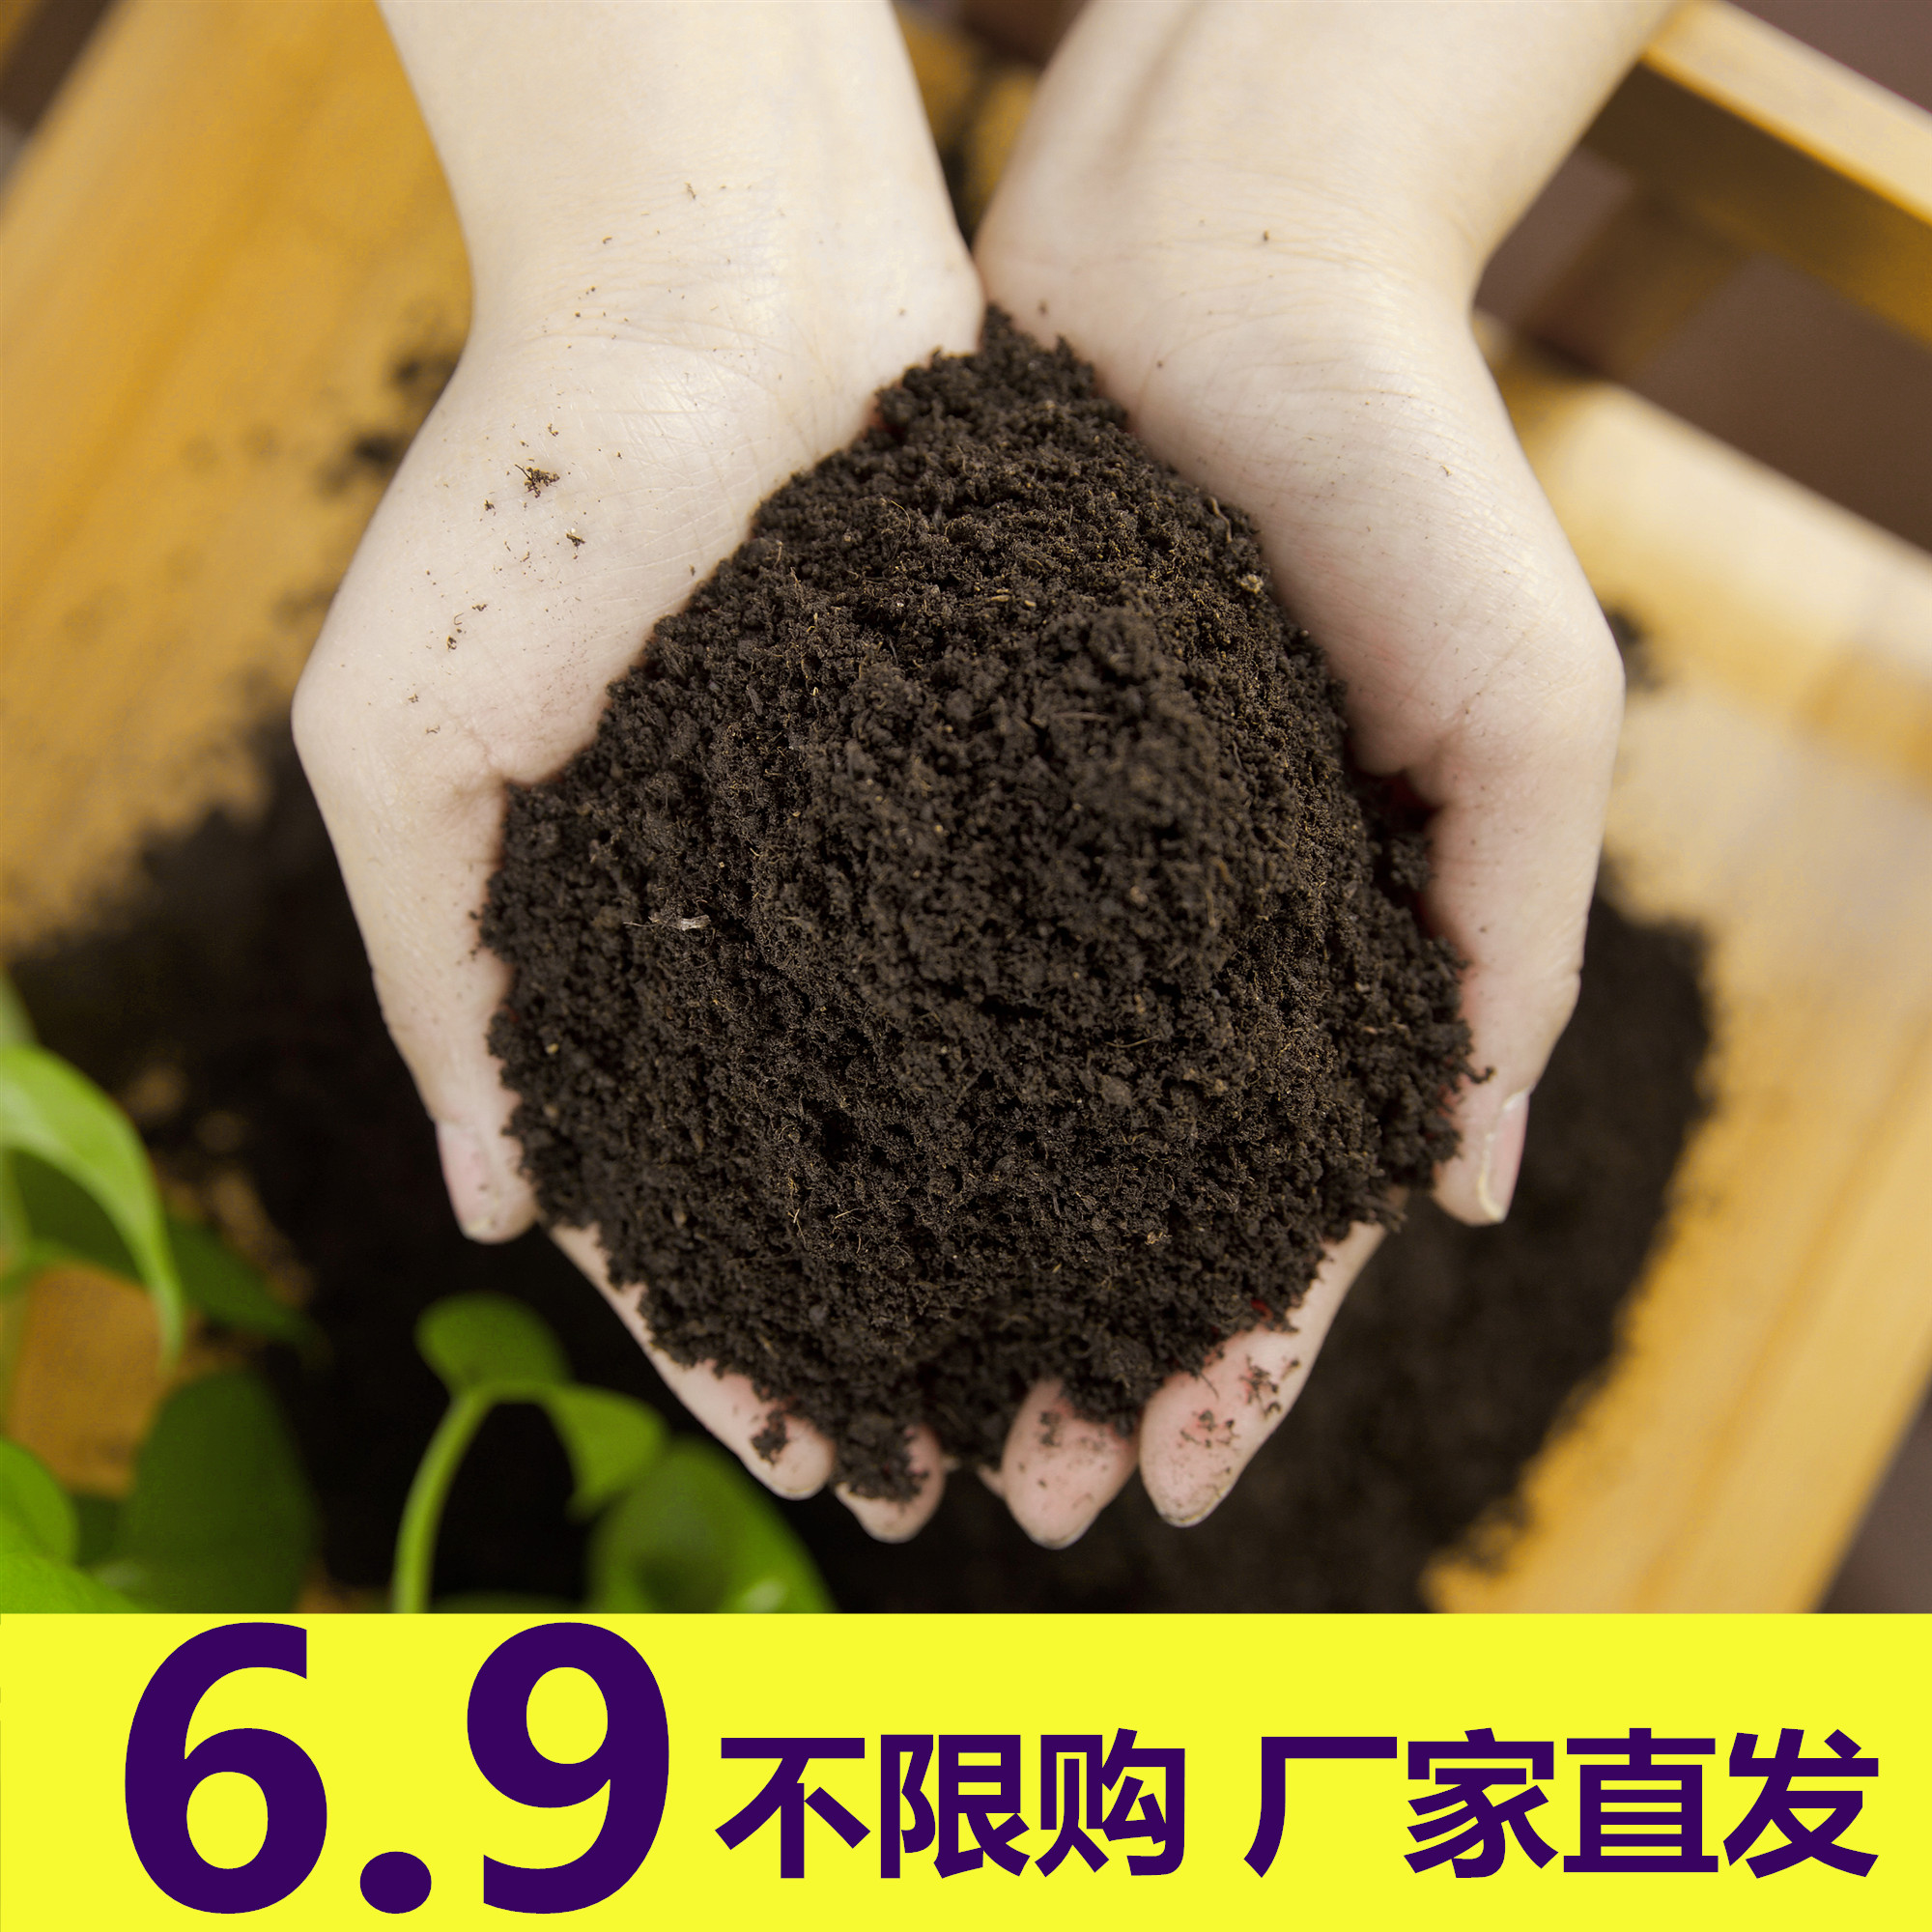 黑土花土种植土腐殖土草炭土营养土种花多肉土有机土种菜泥土肥料